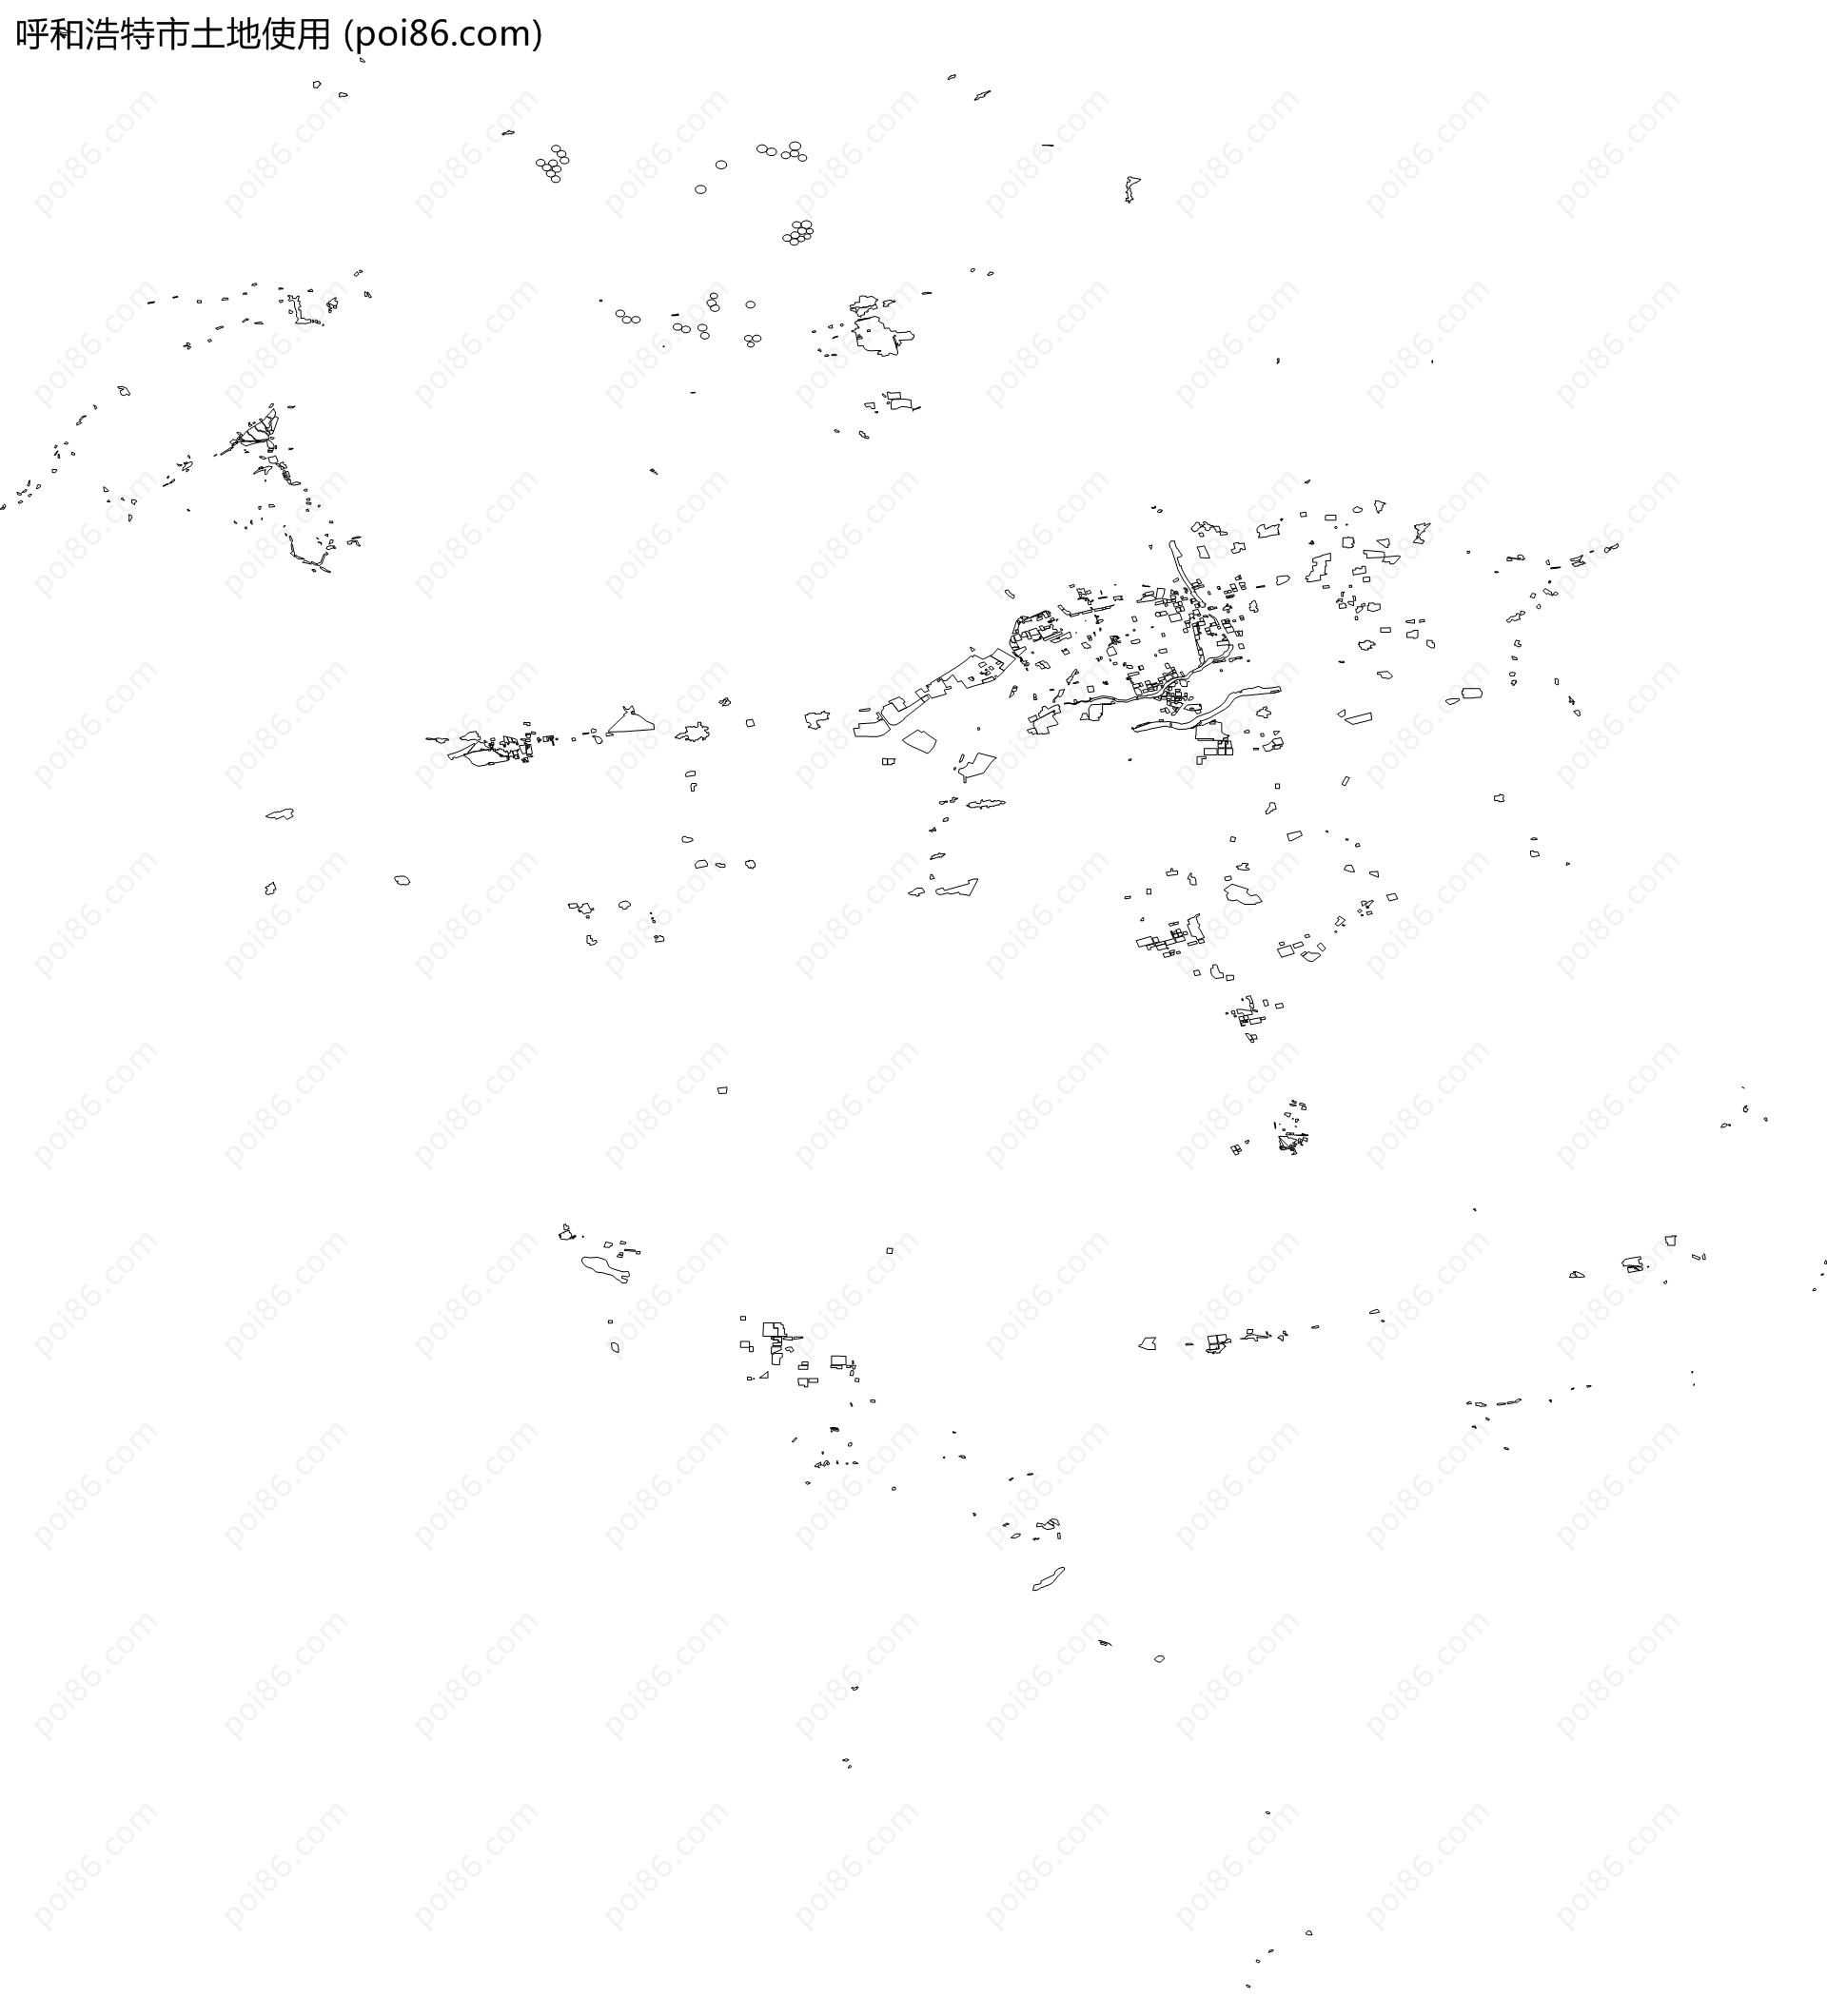 呼和浩特市土地使用地图